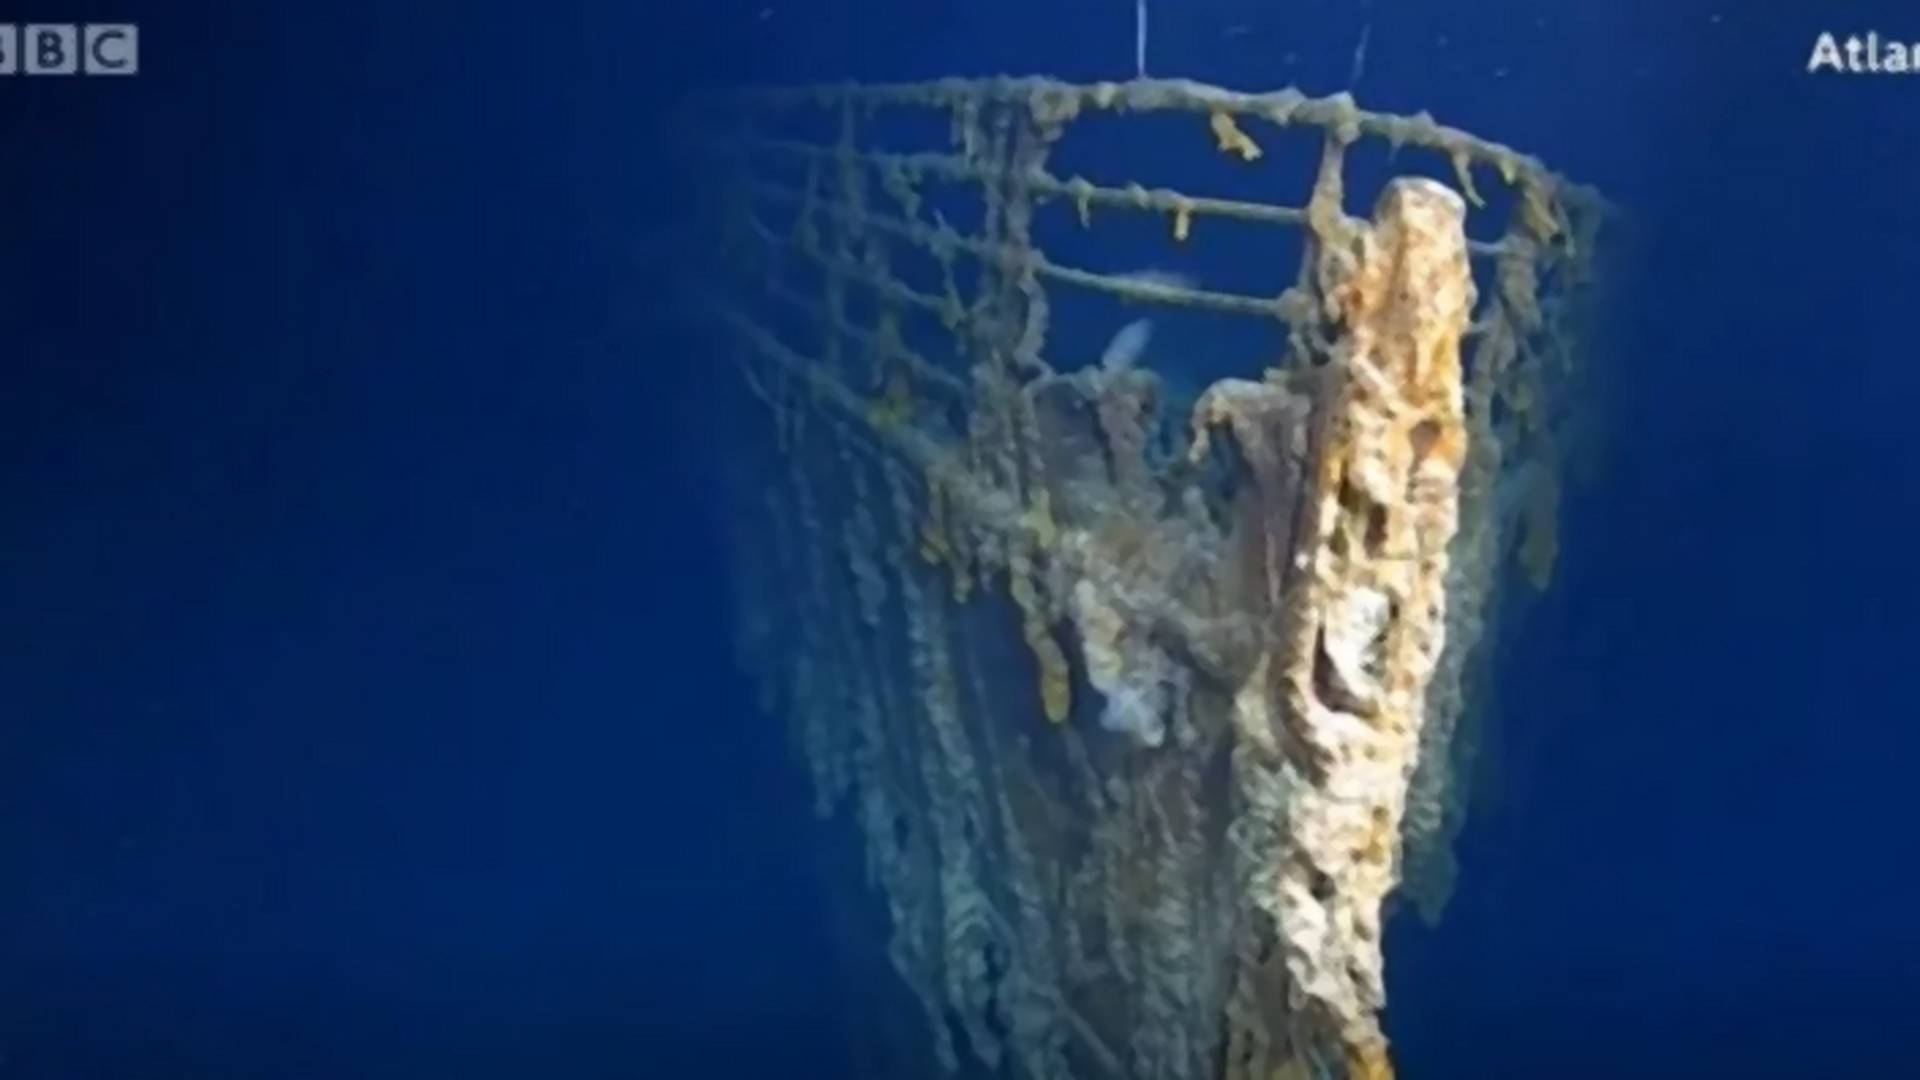 Zaronili su do Titanika prvi put posle 15 godina - i izronili sa tužnim vestima